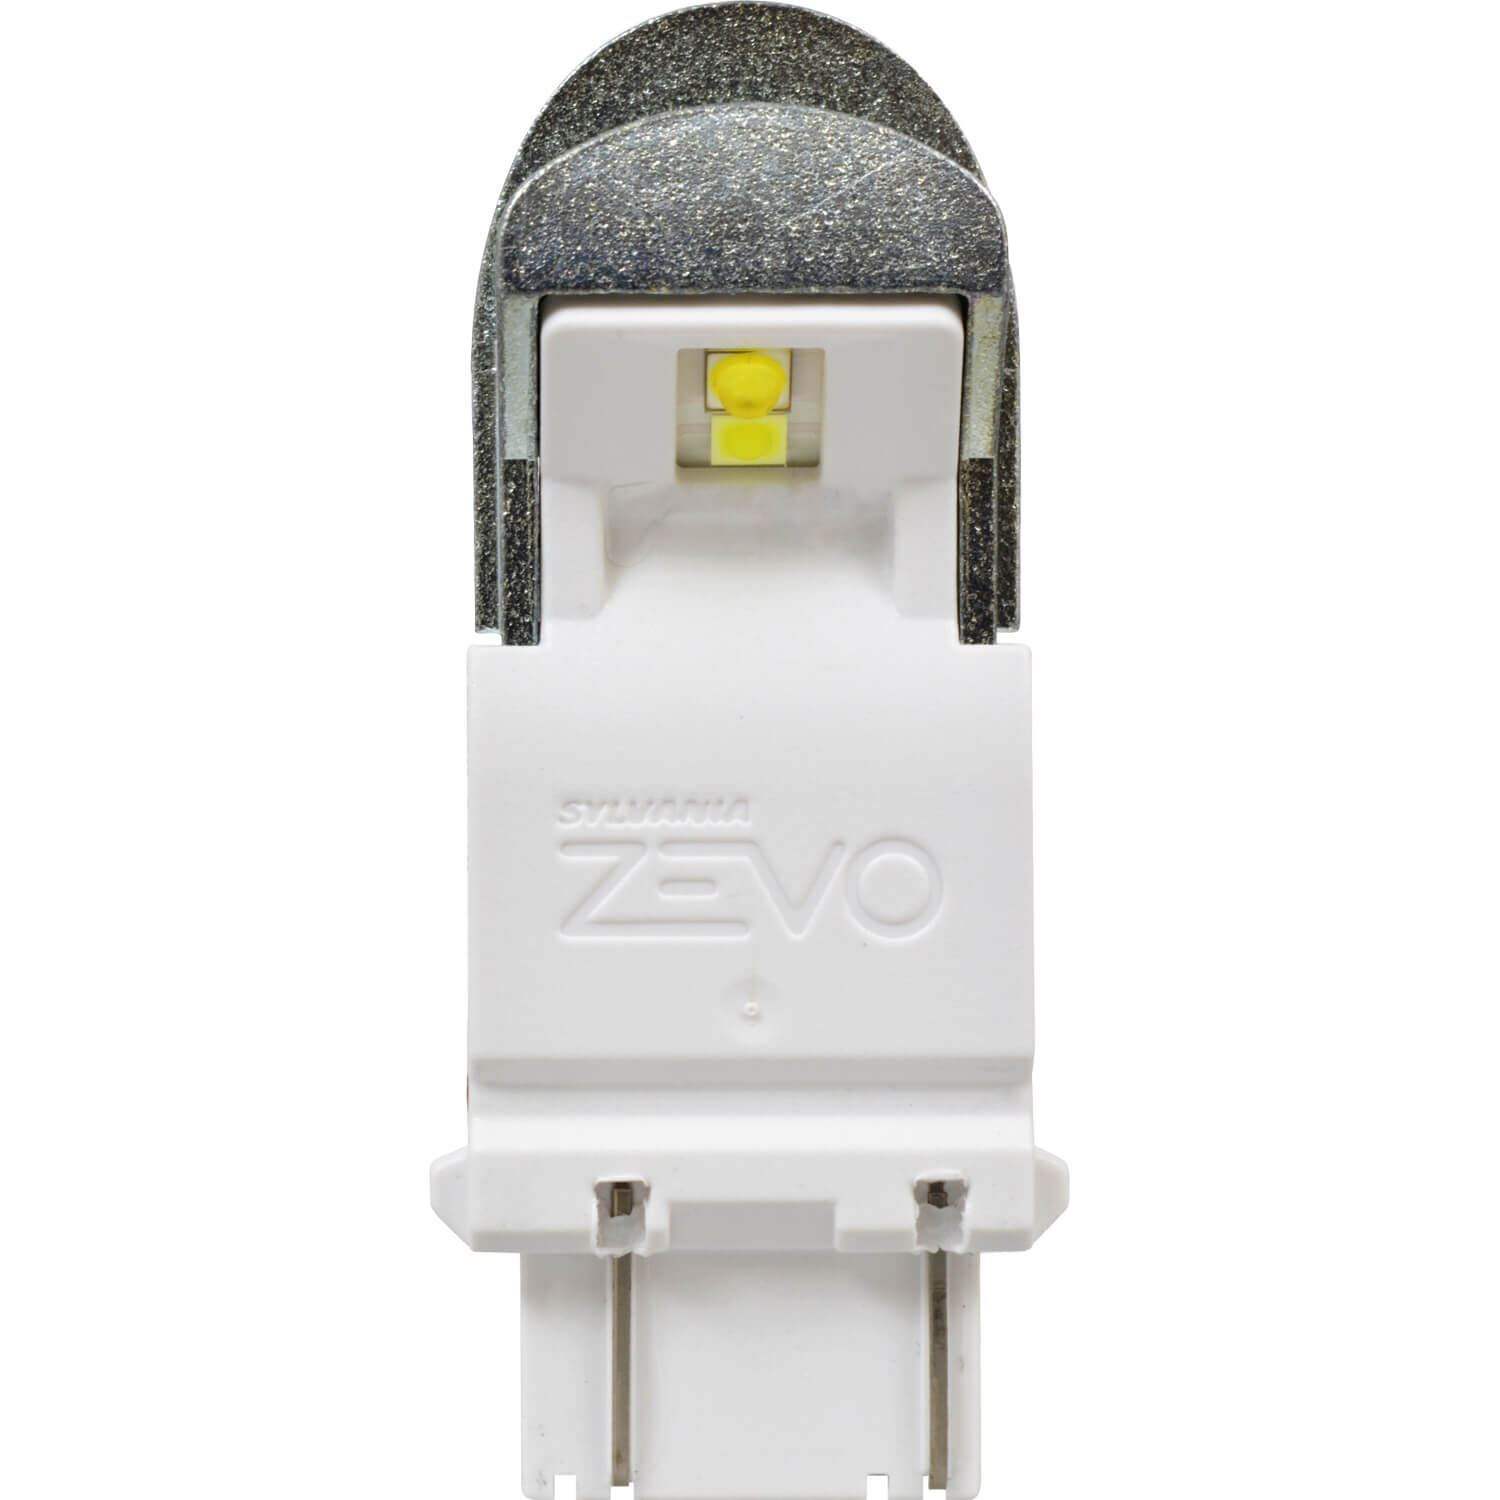 SYLVANIA 3157 WHITE ZEVO LED Mini, 2 Pack